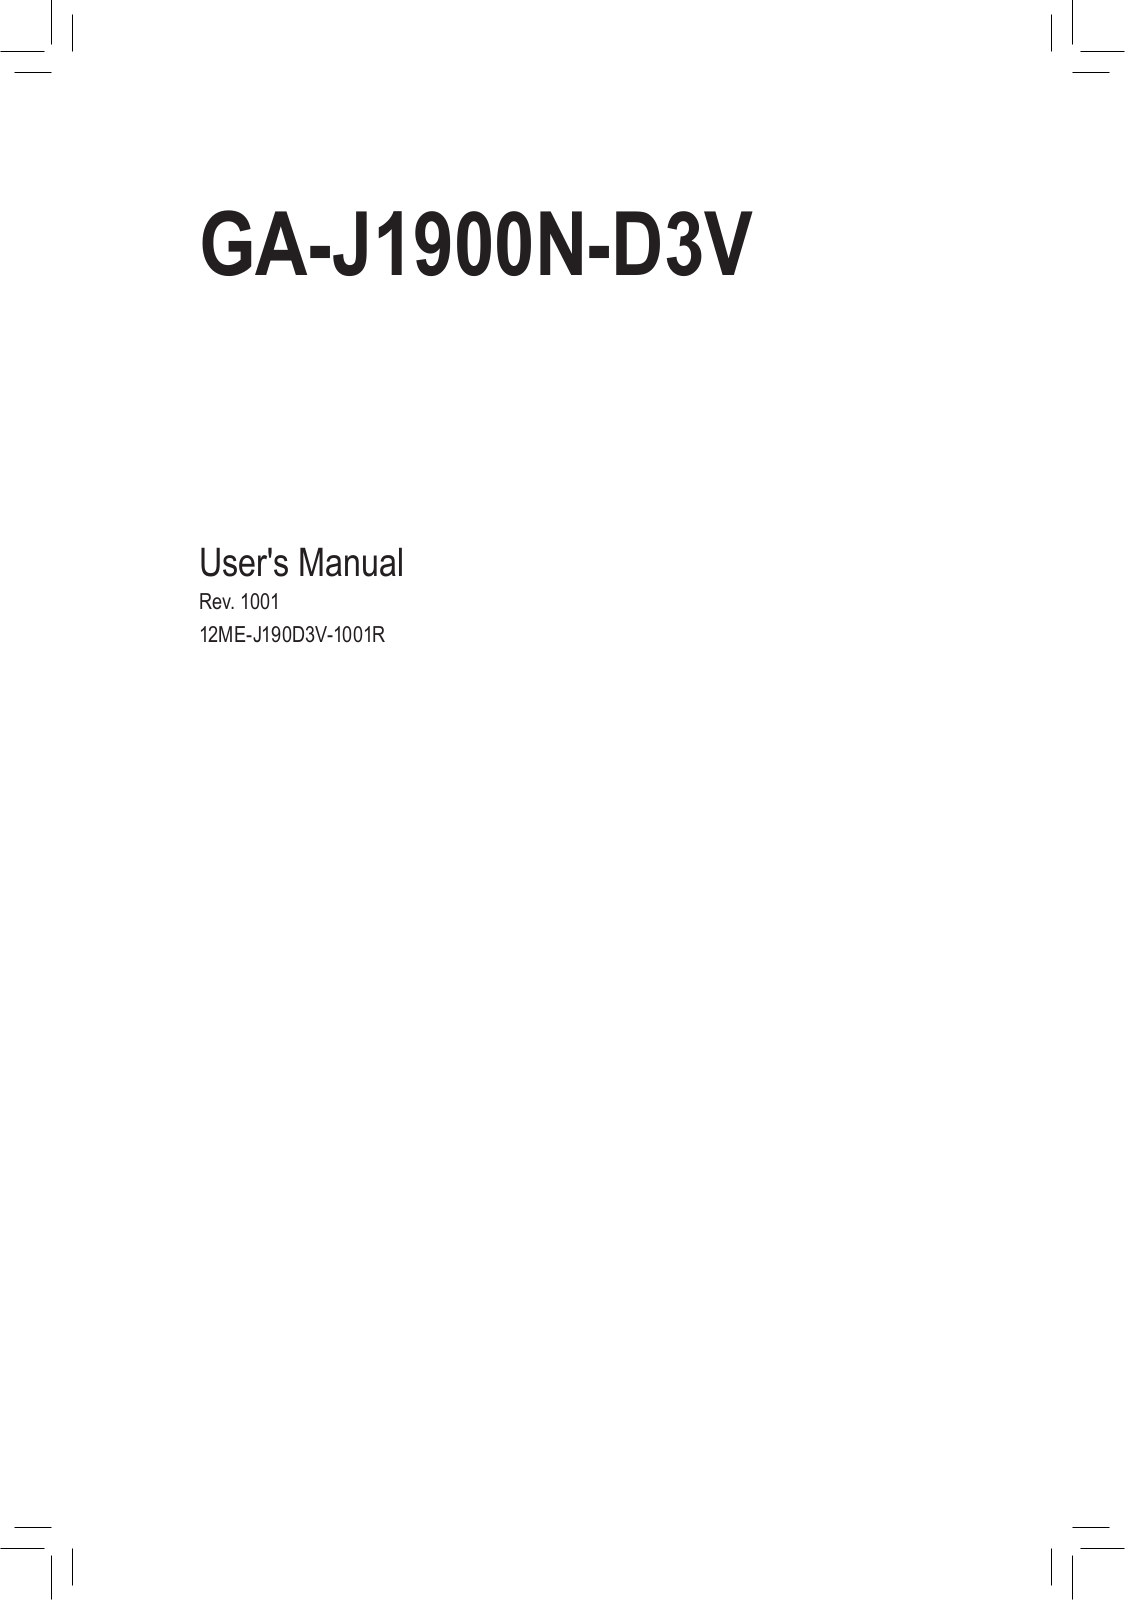 Gigabyte GA-J1900N-D3V User Manual